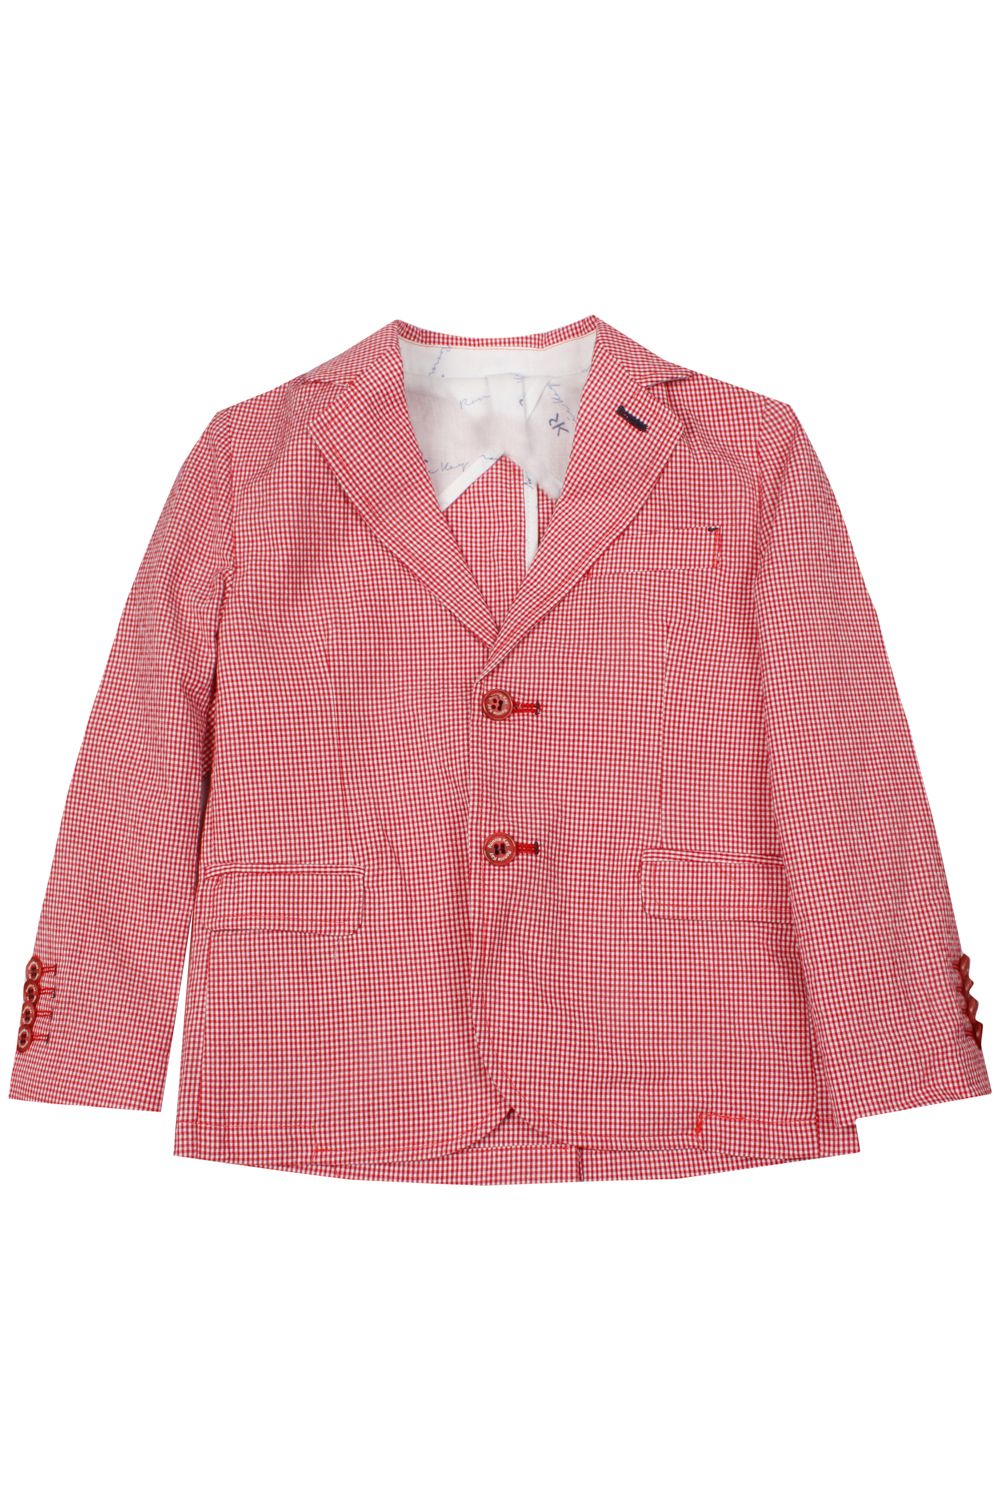 Пиджак Ronnie Kay, размер 110, цвет красный